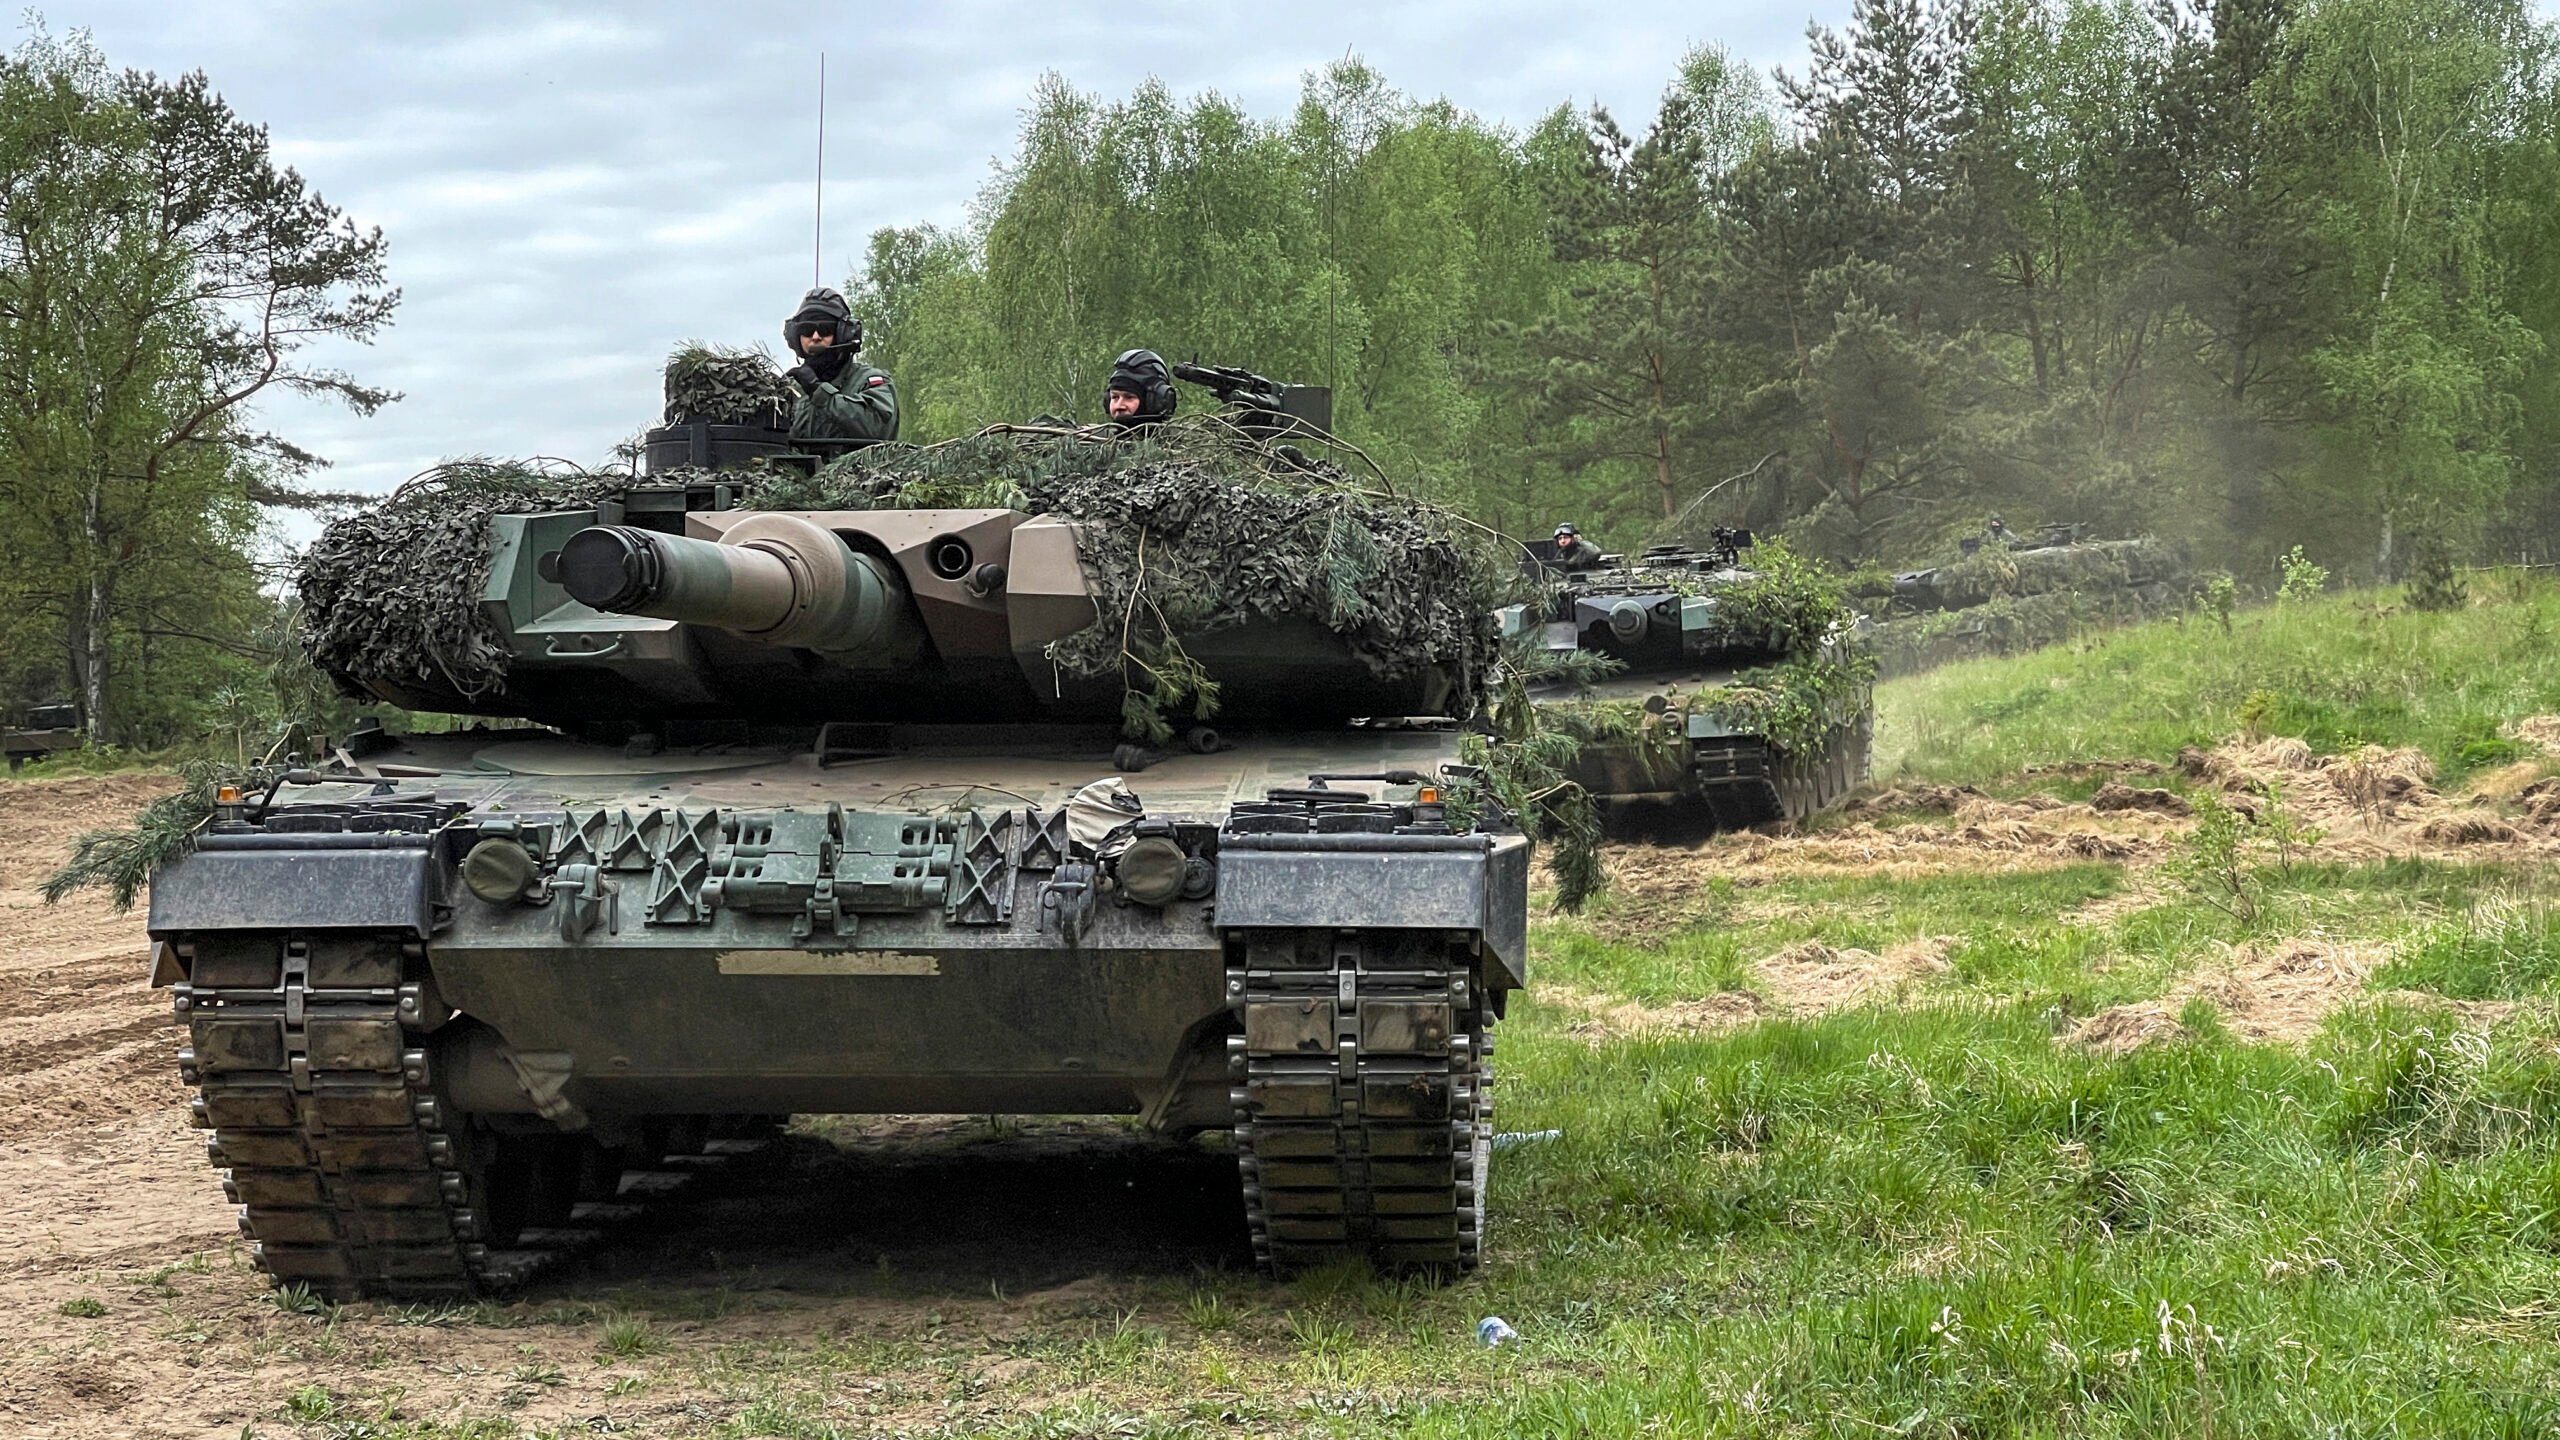 «Οι Ουκρανοί δεν είχαν την δεξιότητα χρήσης των Leopard-2» λέει Αυστριακός συνταγματάρχης για να δικαιολογήσει την καταστροφή τους